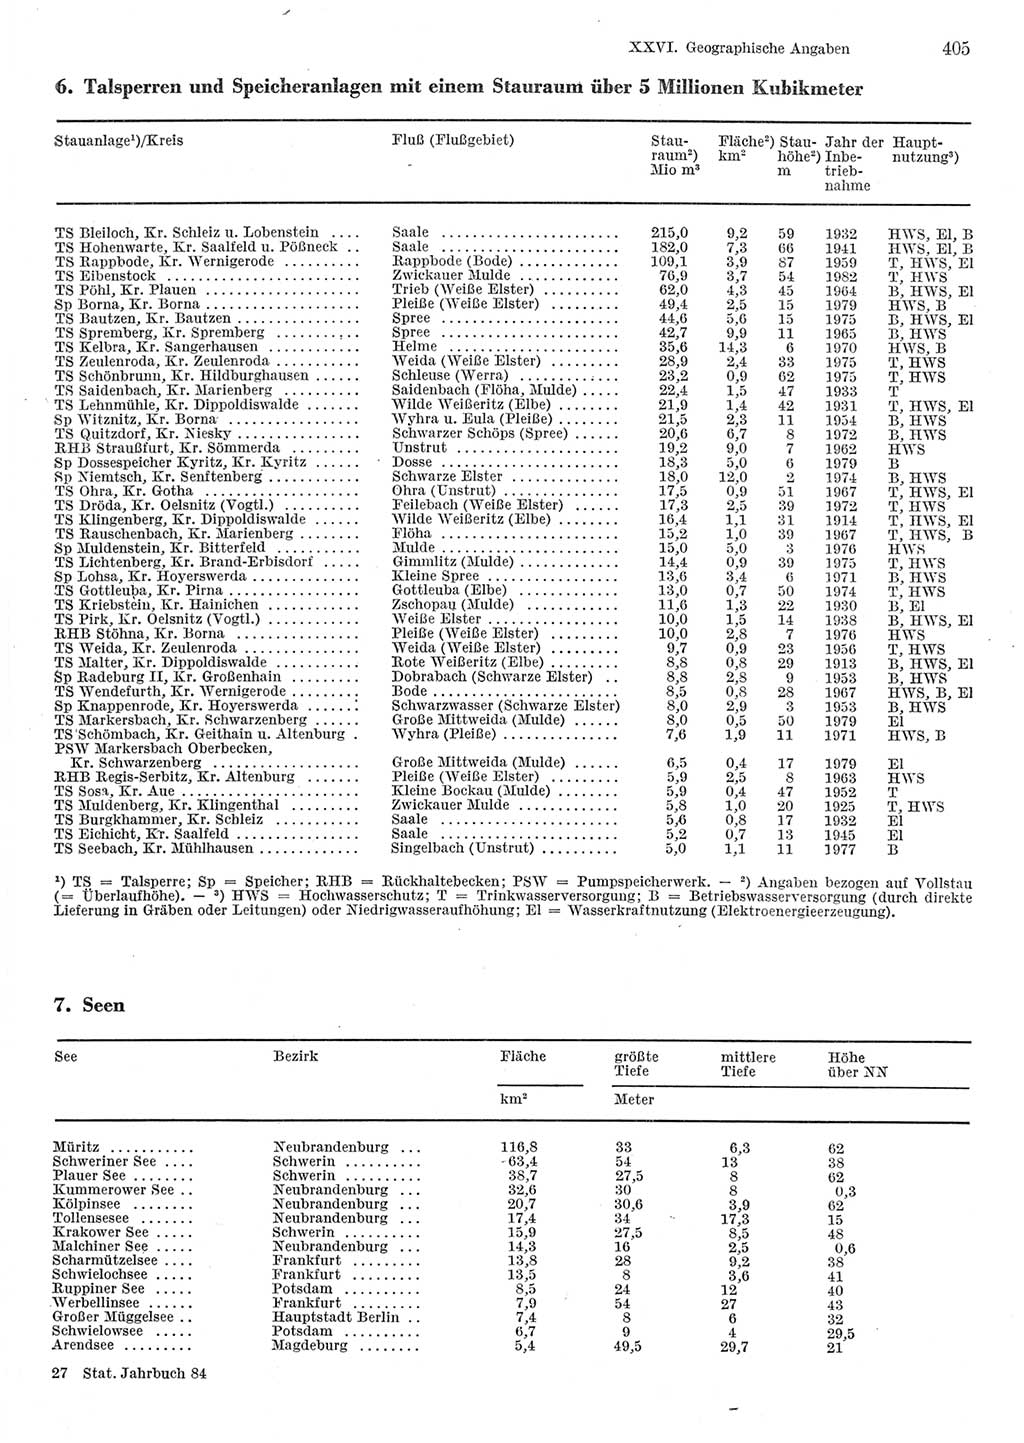 Statistisches Jahrbuch der Deutschen Demokratischen Republik (DDR) 1984, Seite 405 (Stat. Jb. DDR 1984, S. 405)